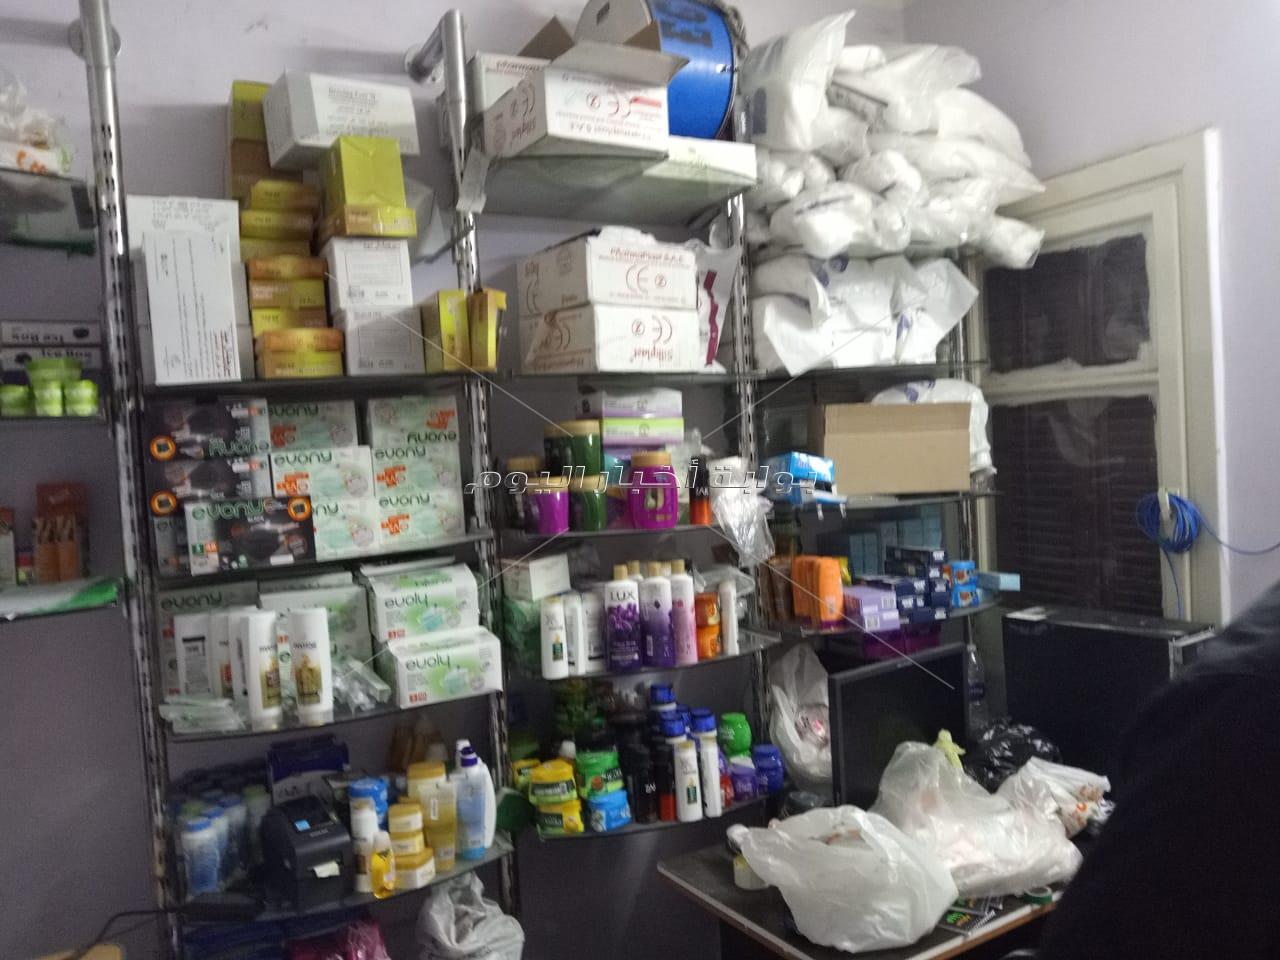 ضبط 400 ألف قرص أدوية فاسدة داخل مخزن تابع لصيدلية شهيرة بالقاهرة